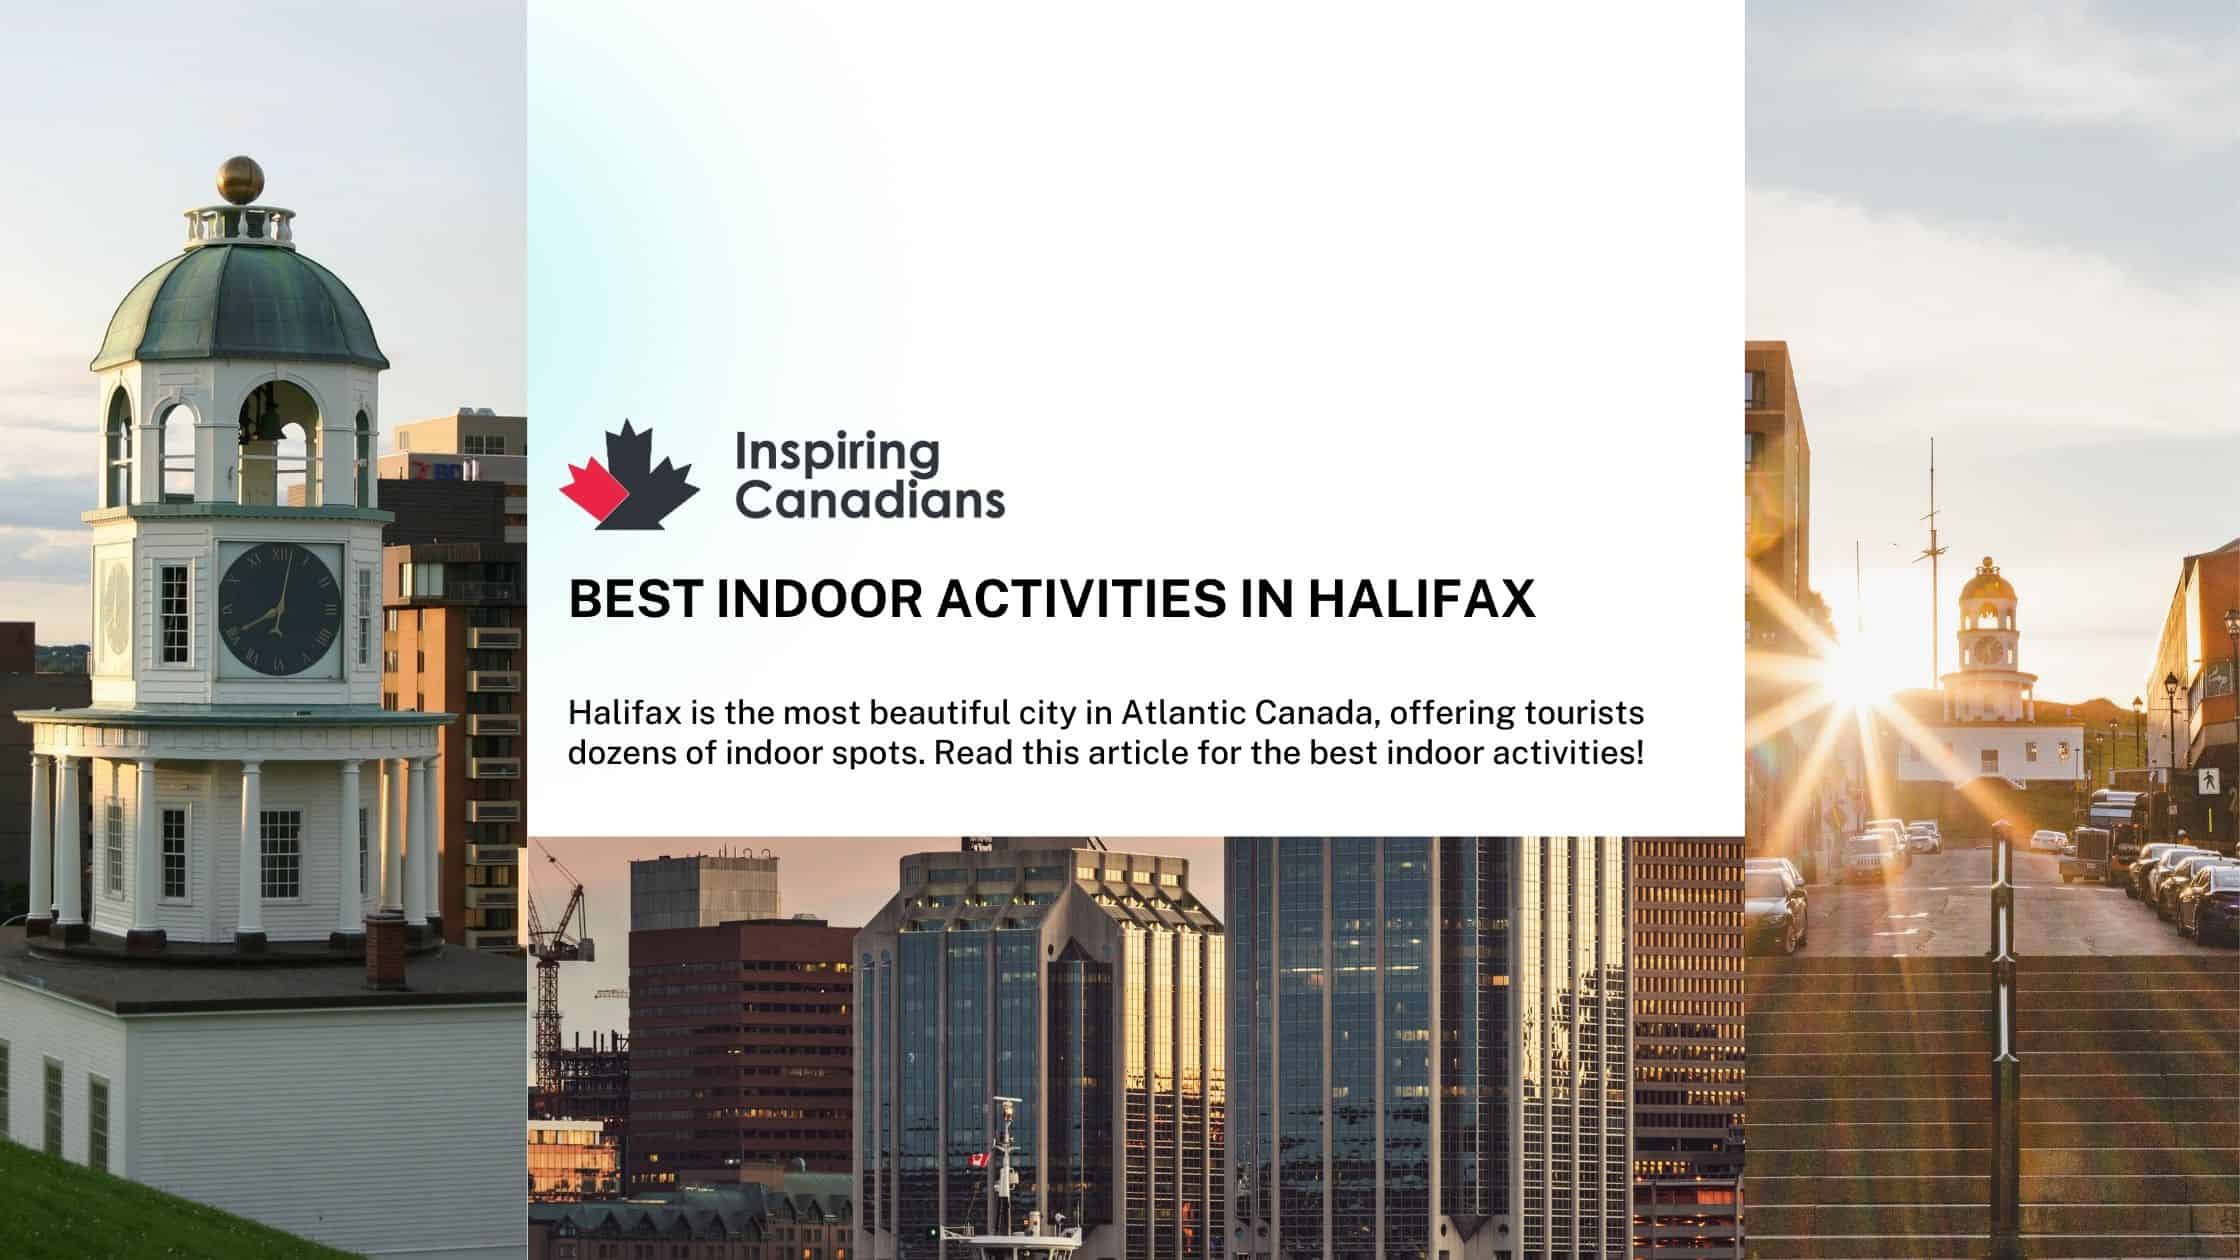 Best Indoor Activities in Halifax